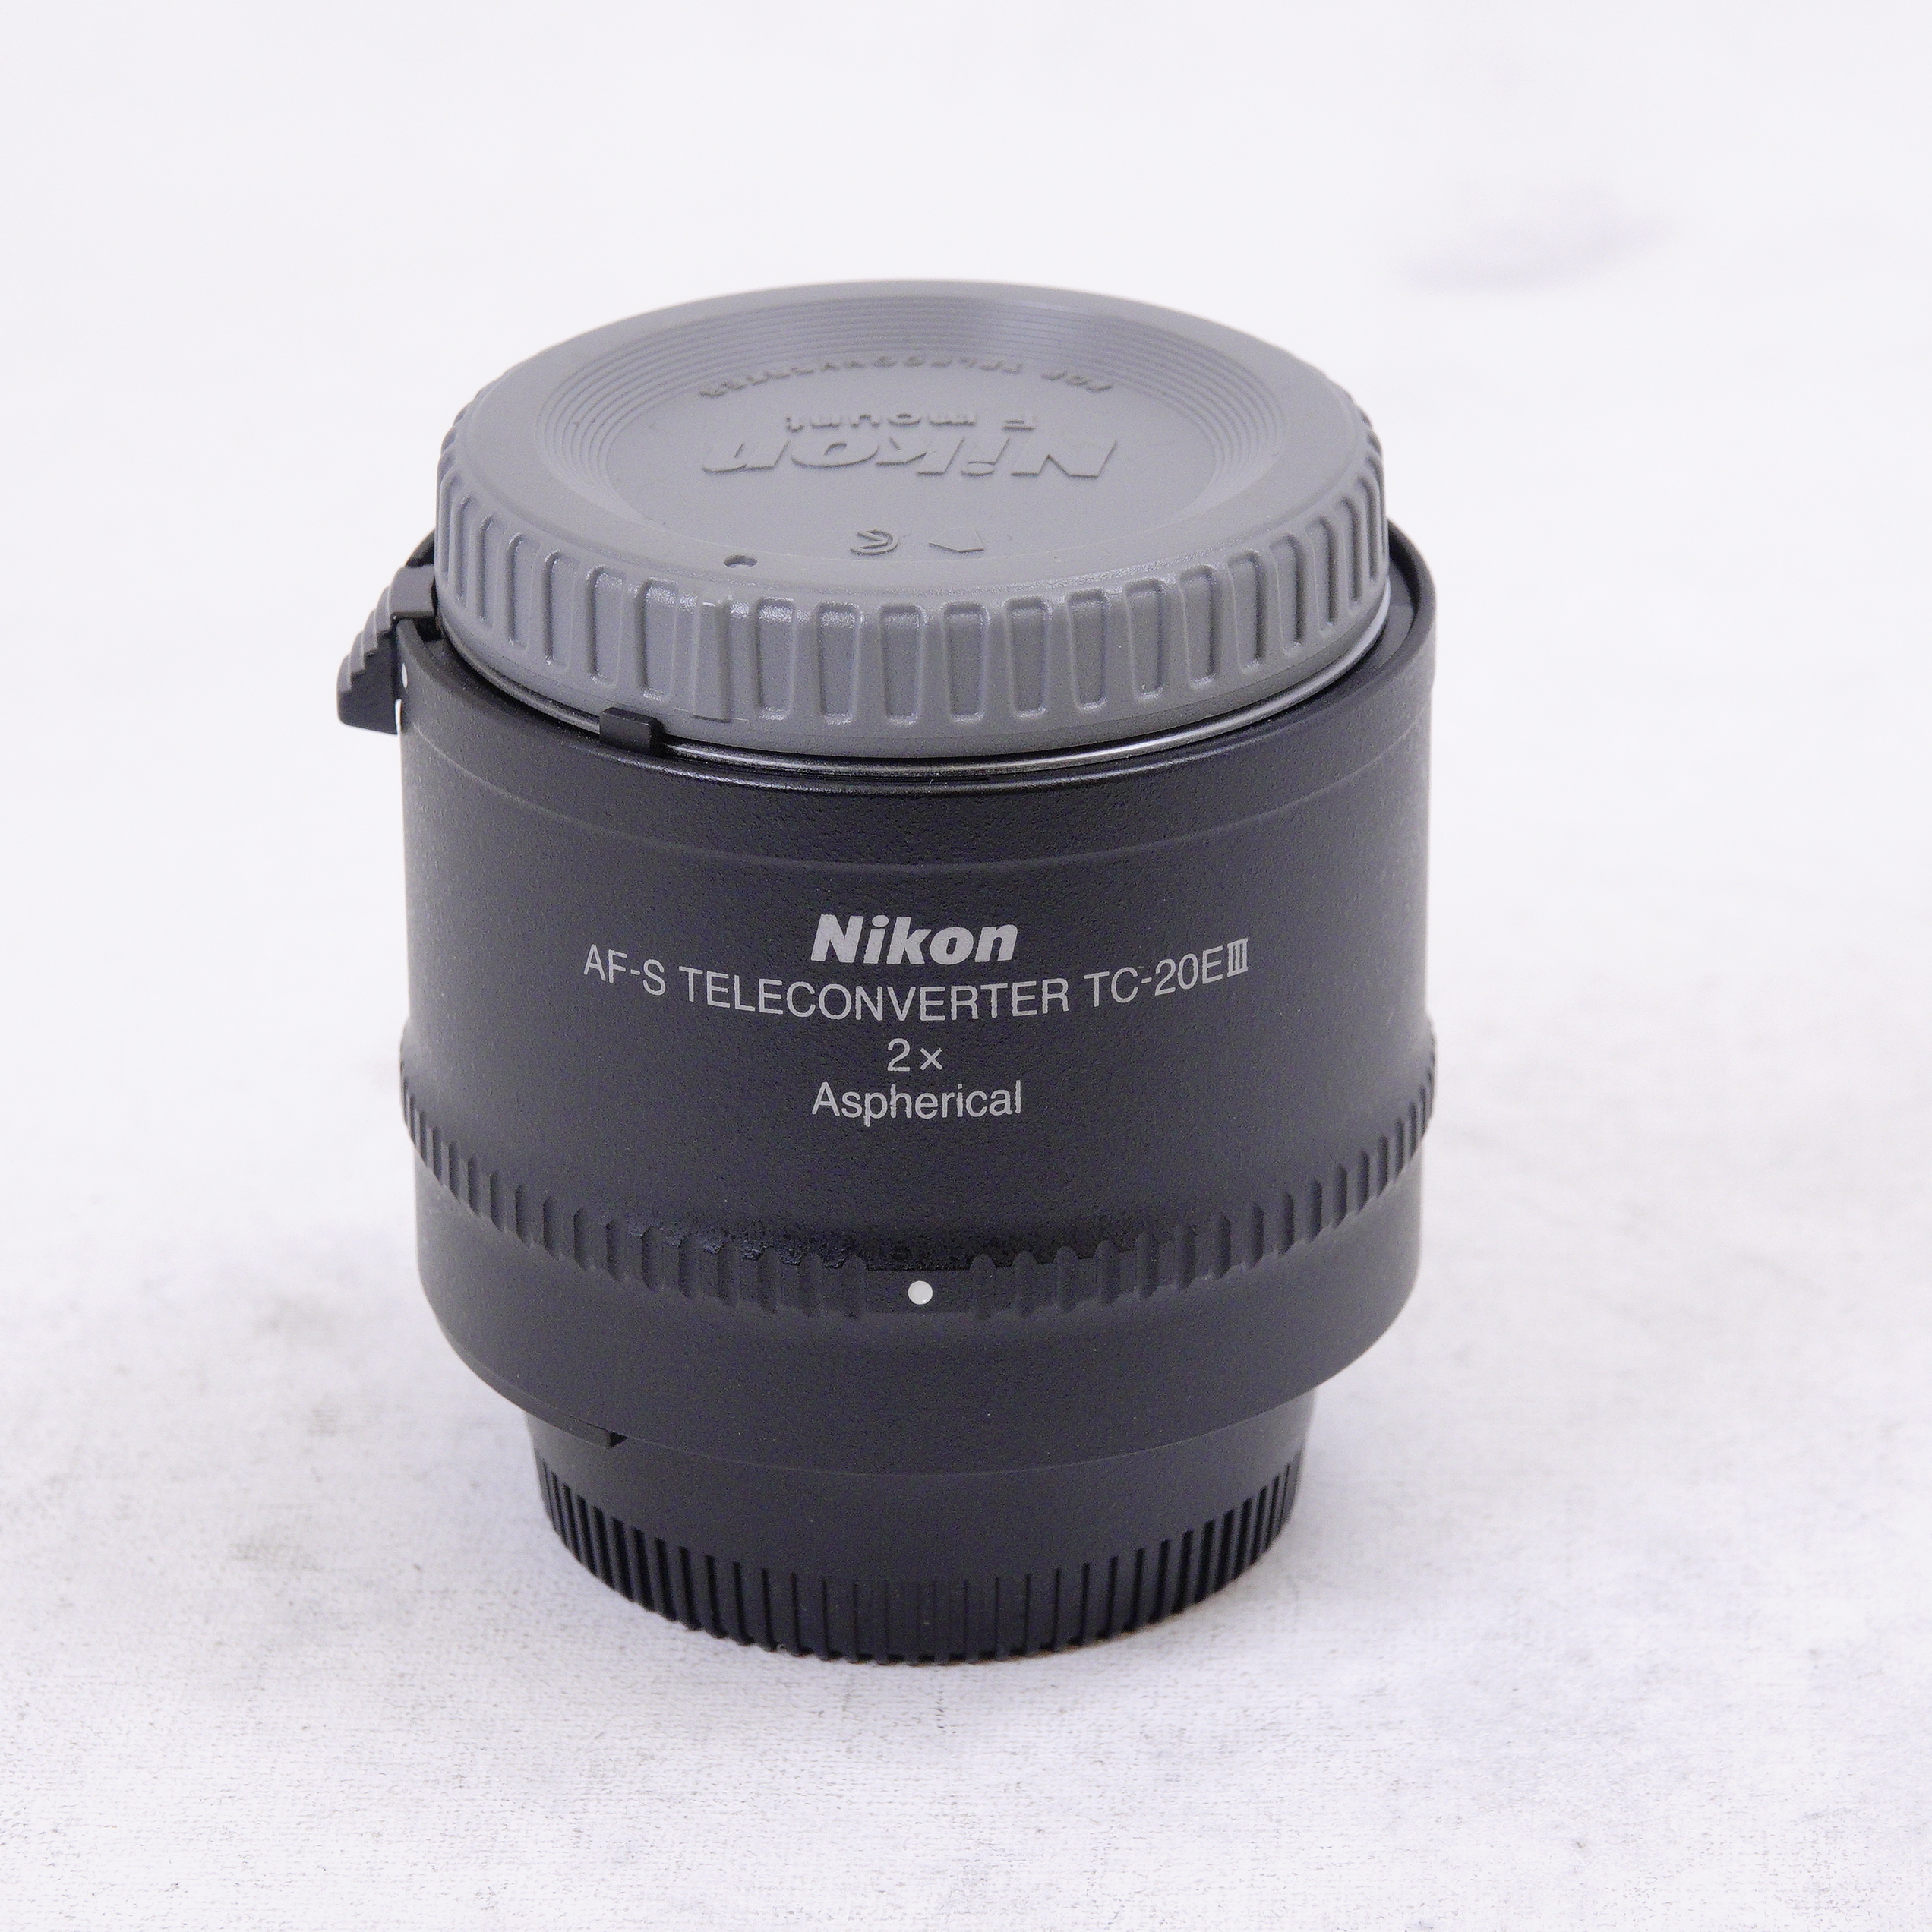 Nikon AF-S Teleconverter TC-20E III 2x - Used